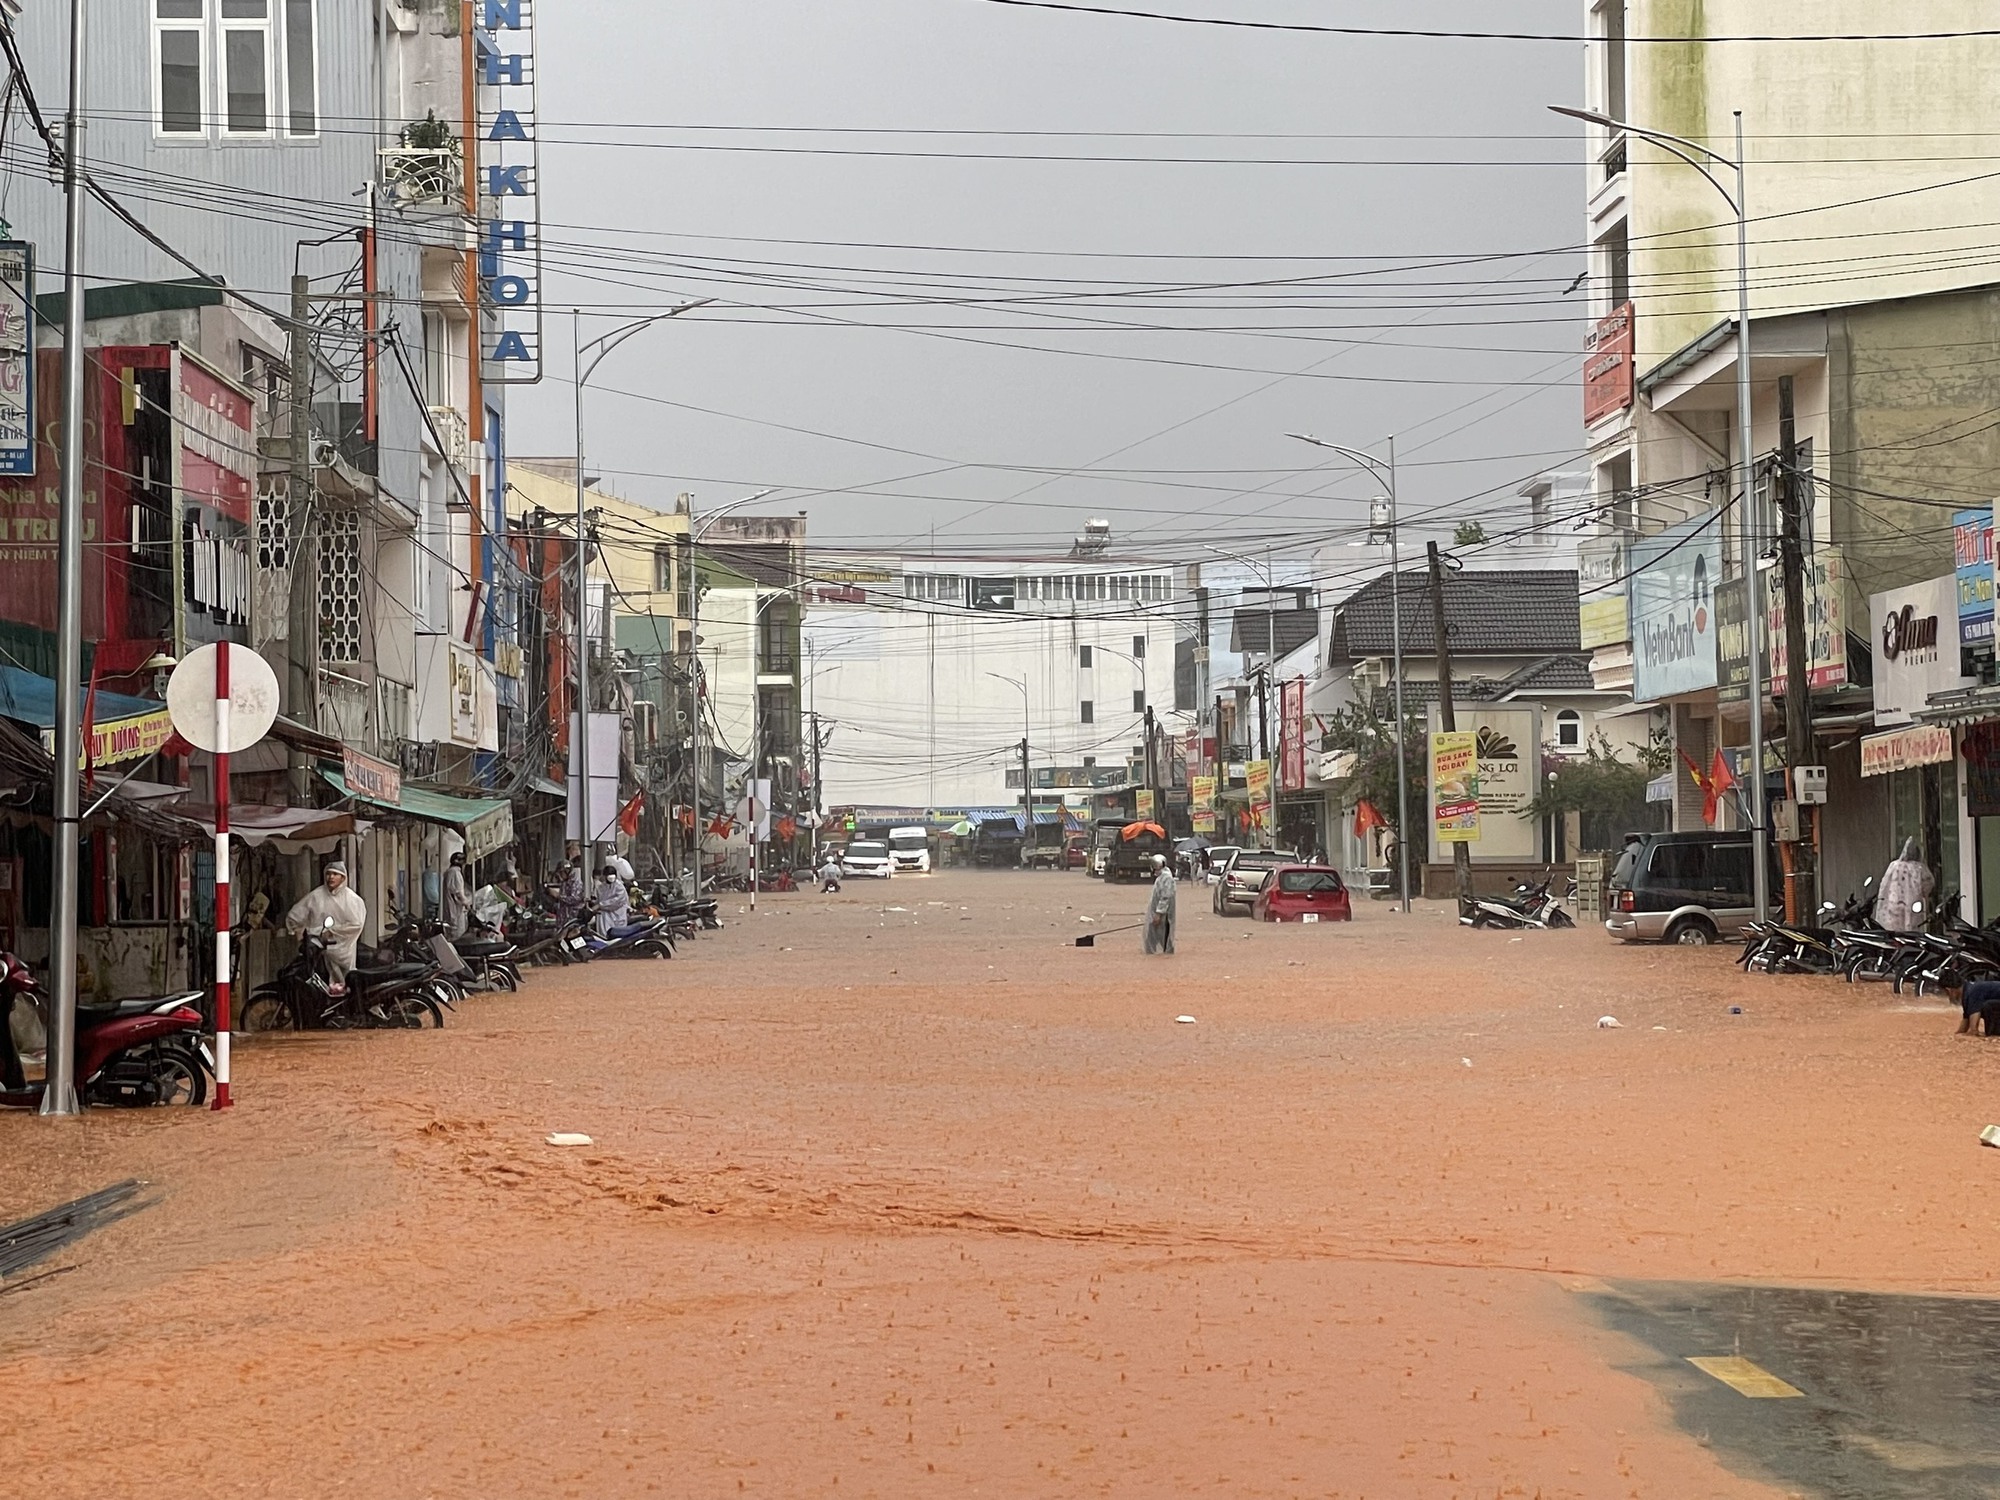 Ảnh: Người dân đường Phan Đình Phùng ở Đà Lạt bì bõm dọn nhà sau cơn mưa lớn - Ảnh 1.